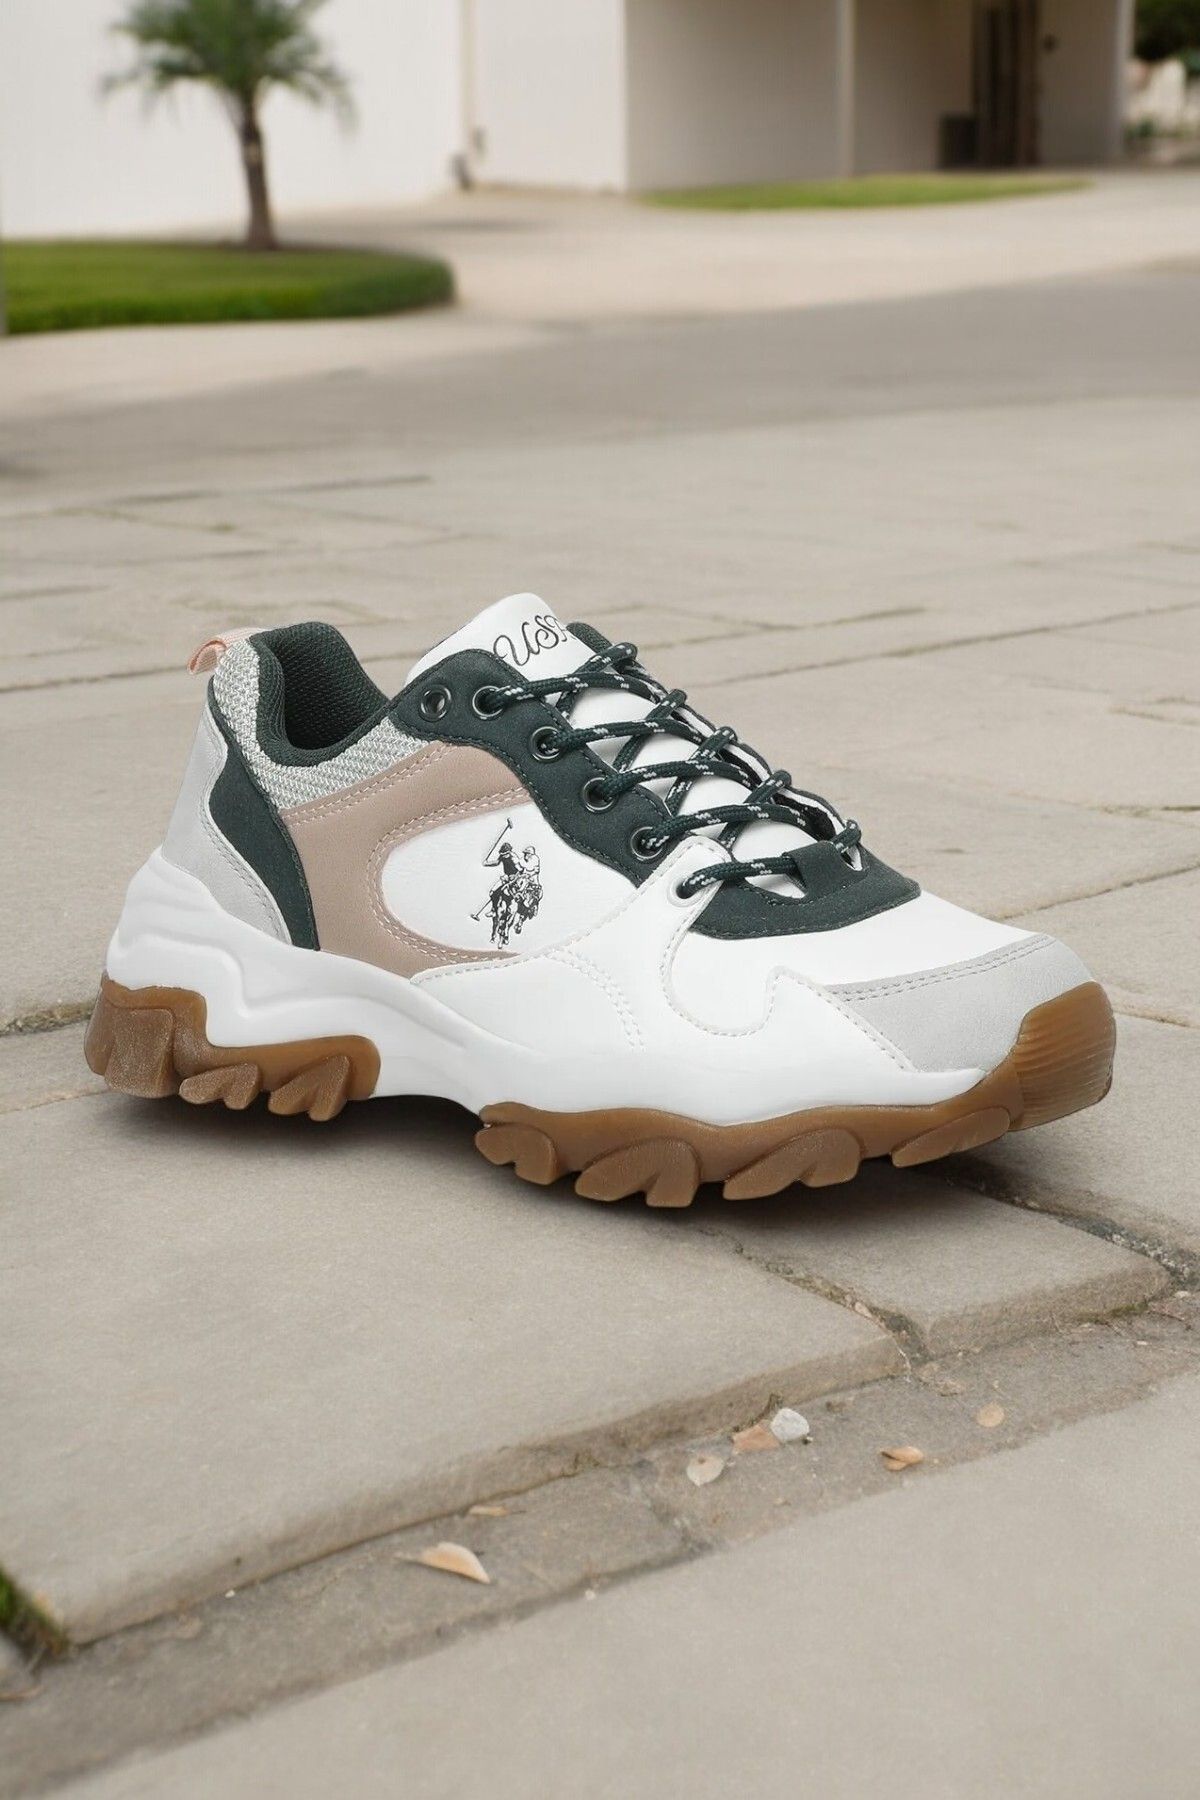 U.S. Polo Assn. Beyaz/Yeşil Kadın Sneaker Casual Günlük Spor Ayakkabı